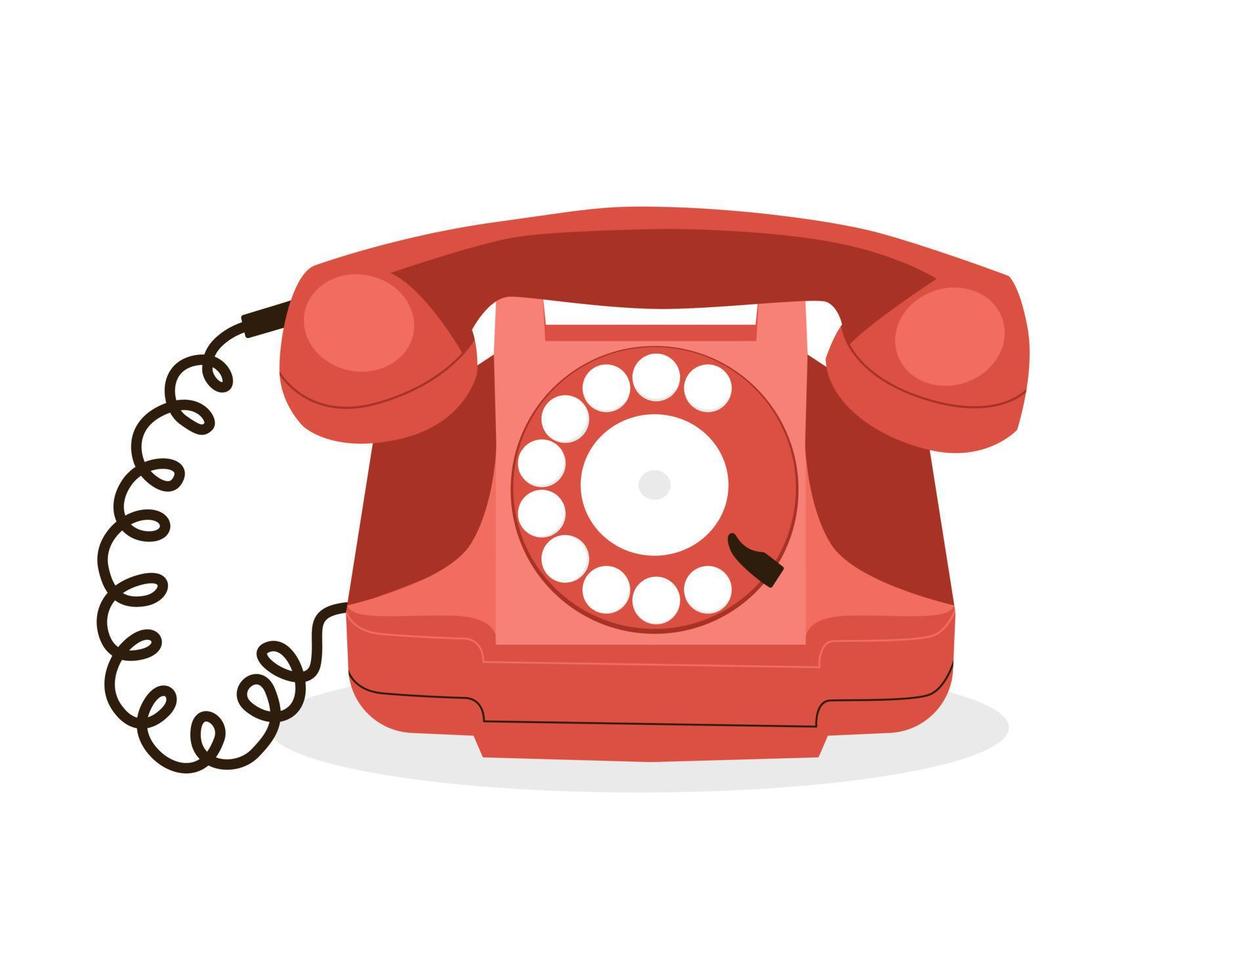 teléfono rojo retro con disco giratorio. viejo teléfono histórico. ilustración vectorial aislado sobre fondo blanco vector